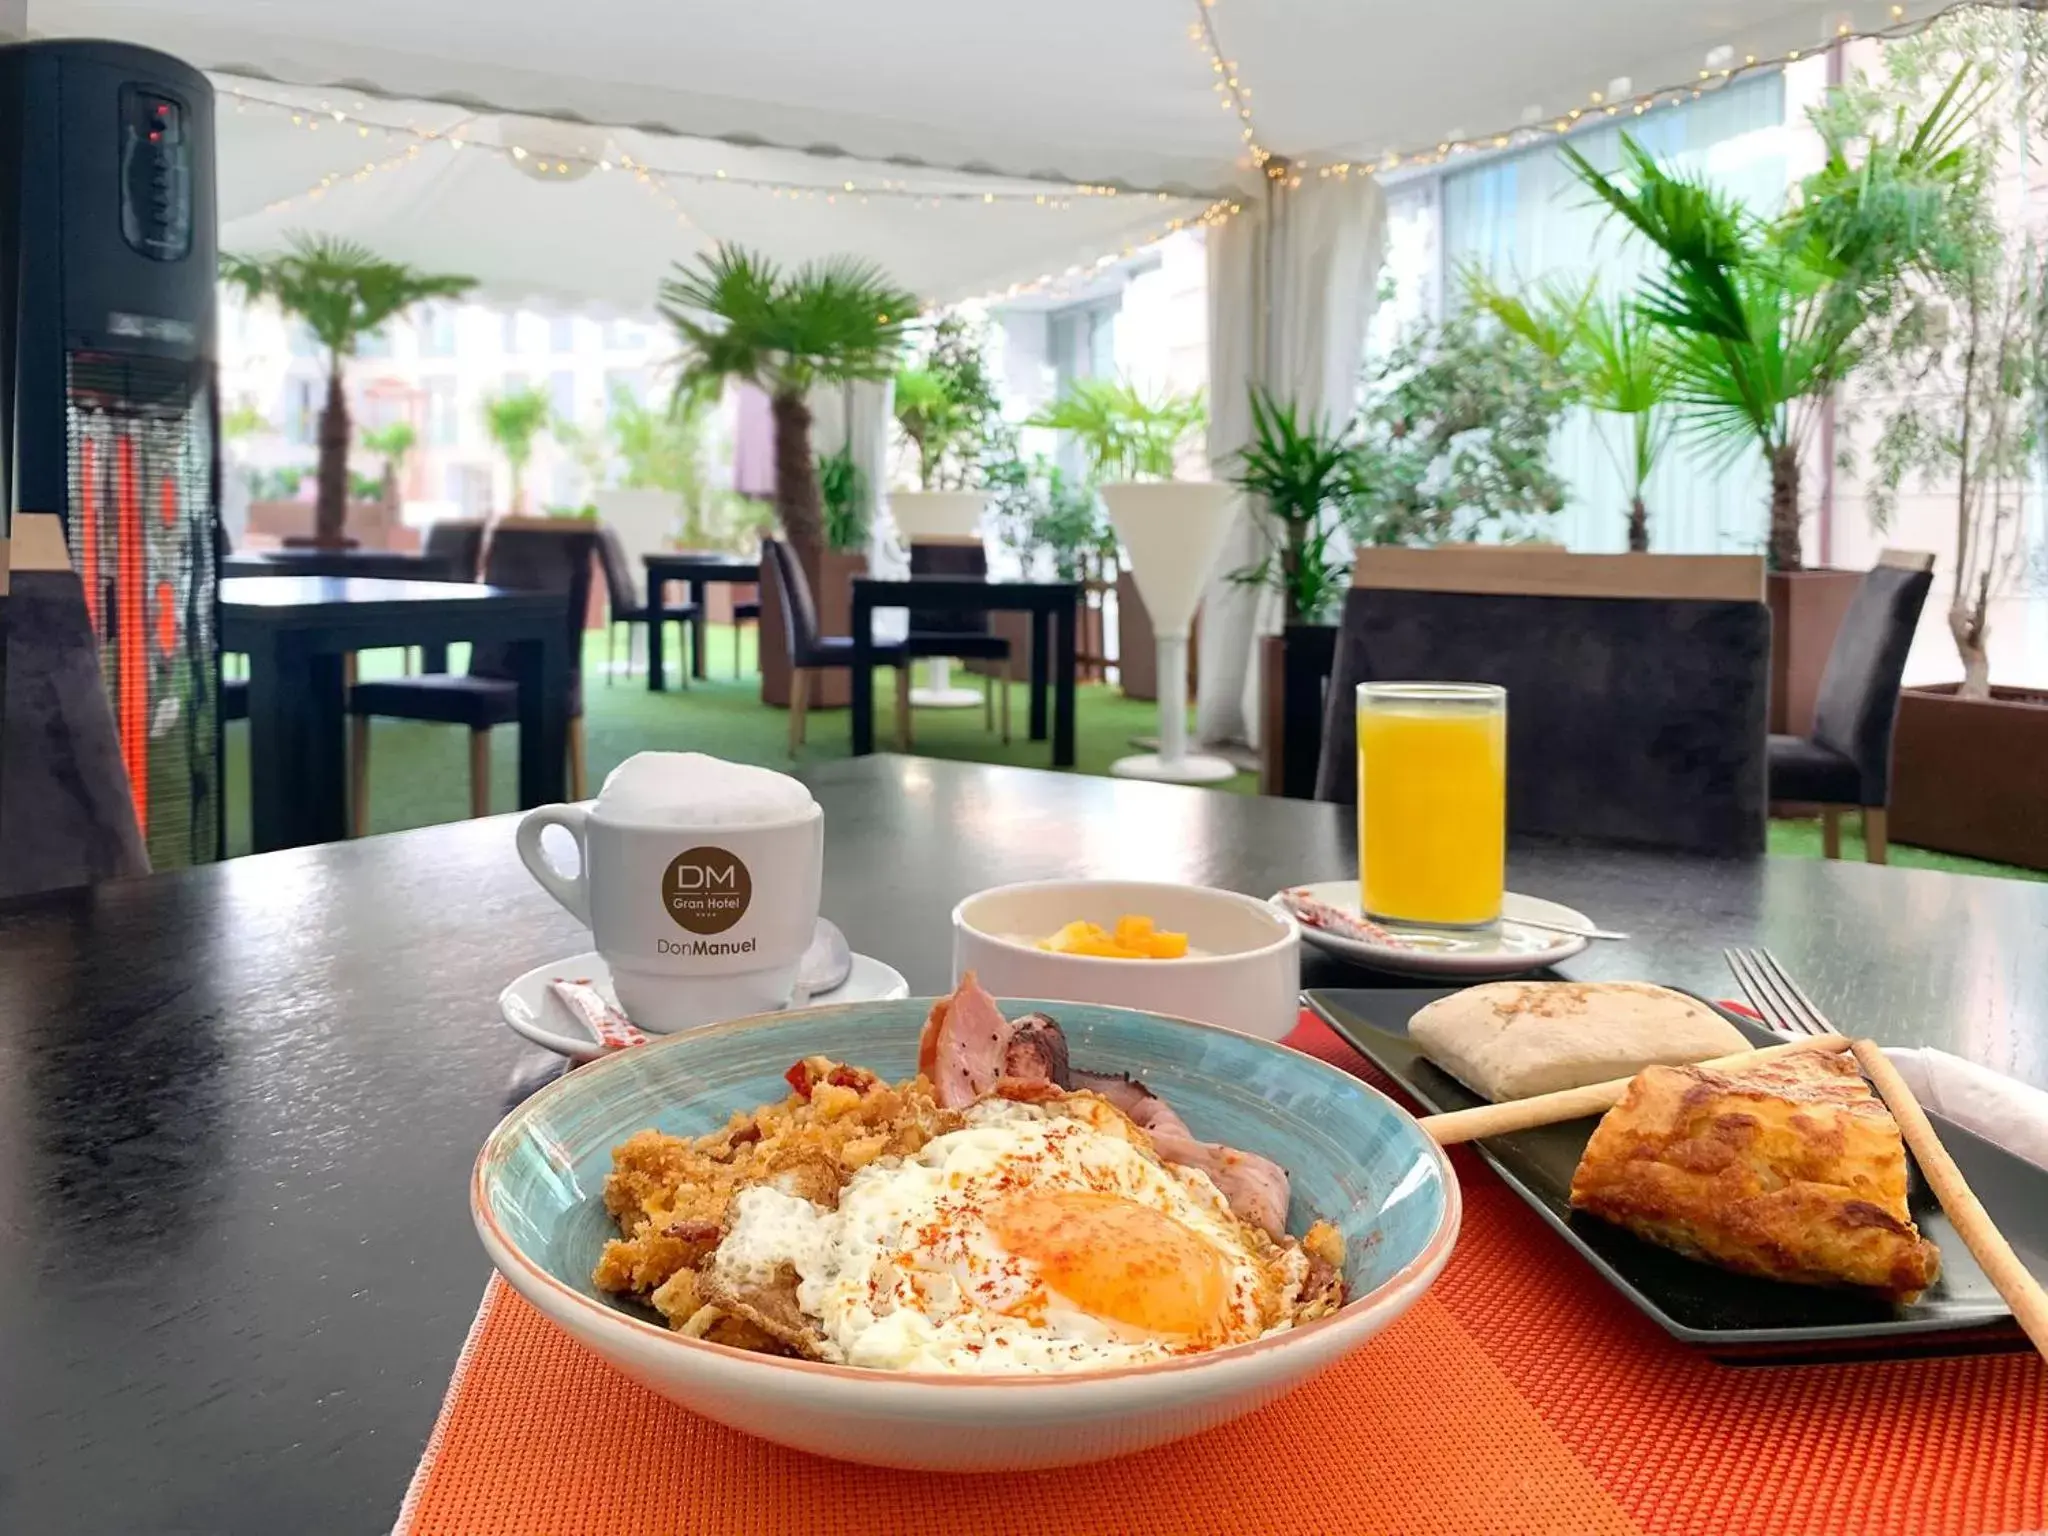 Breakfast in Gran Hotel Don Manuel